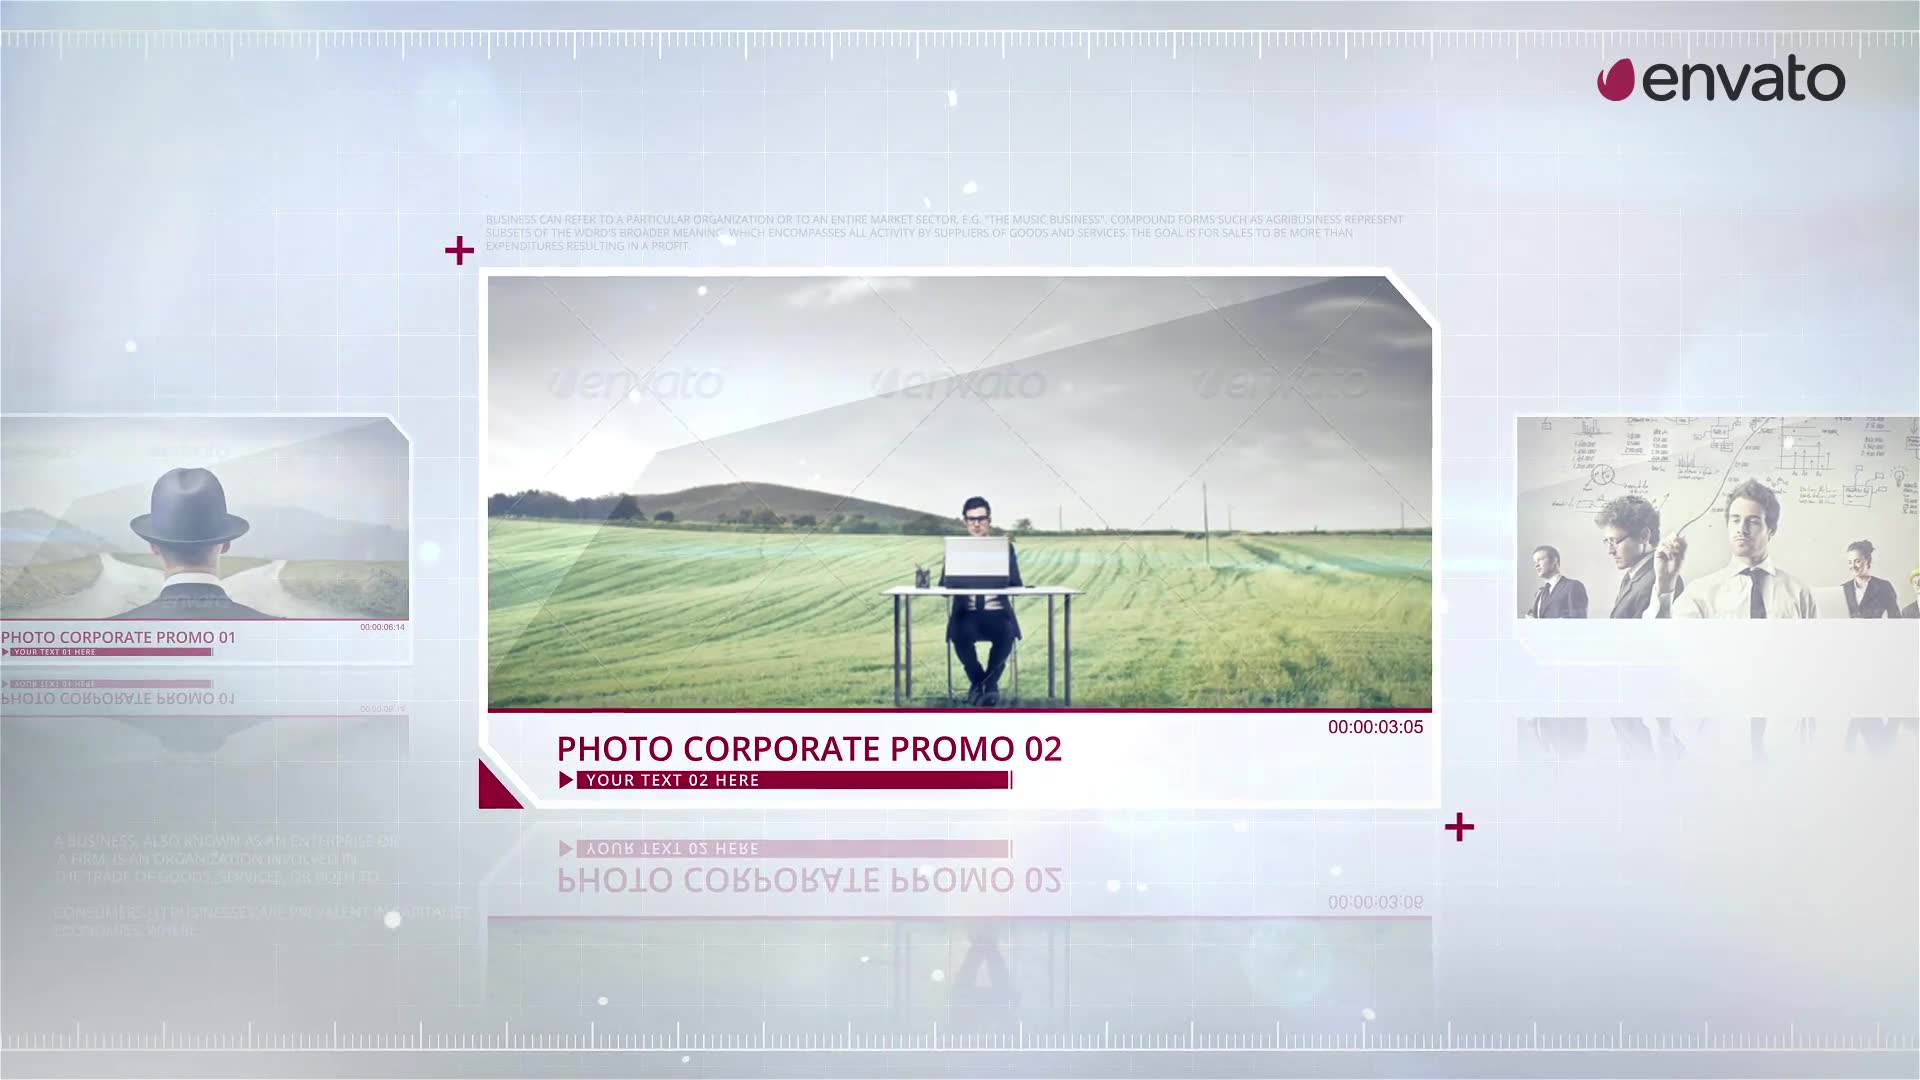 Photo Corporate Promo Videohive 32890001 Premiere Pro Image 2